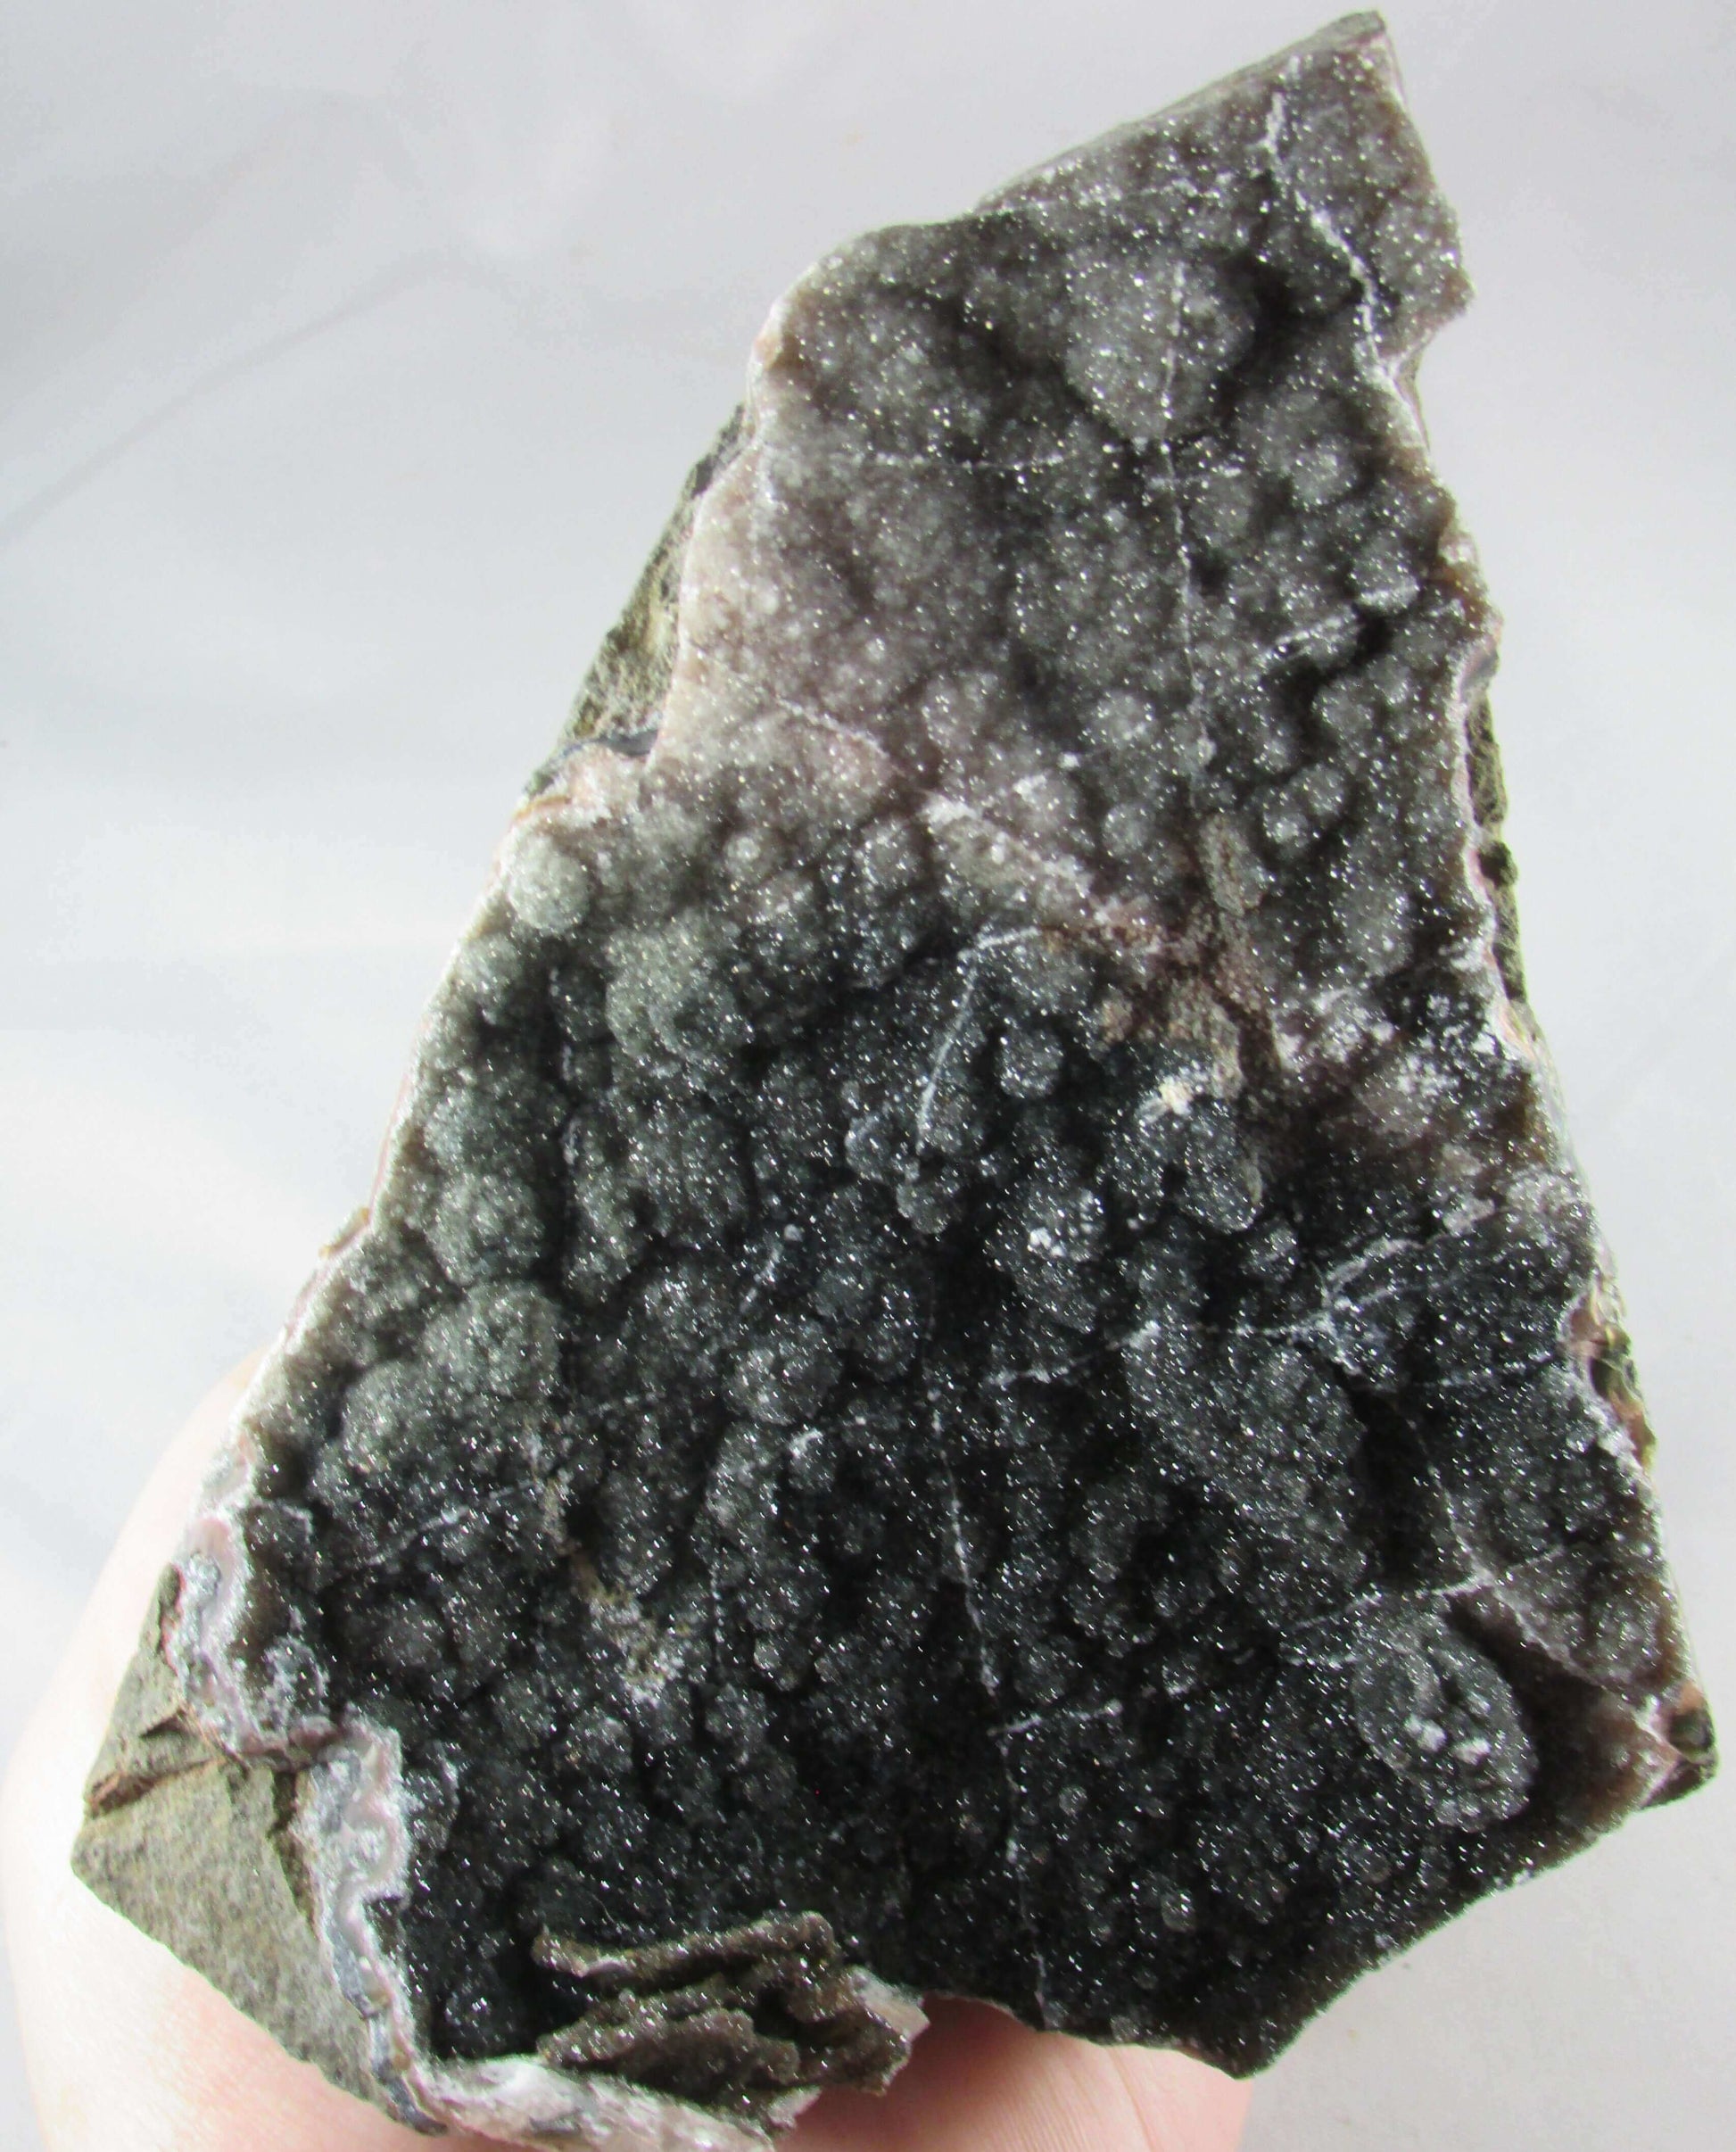 black galaxy amethyst crystals, genuine amethyst, brazil